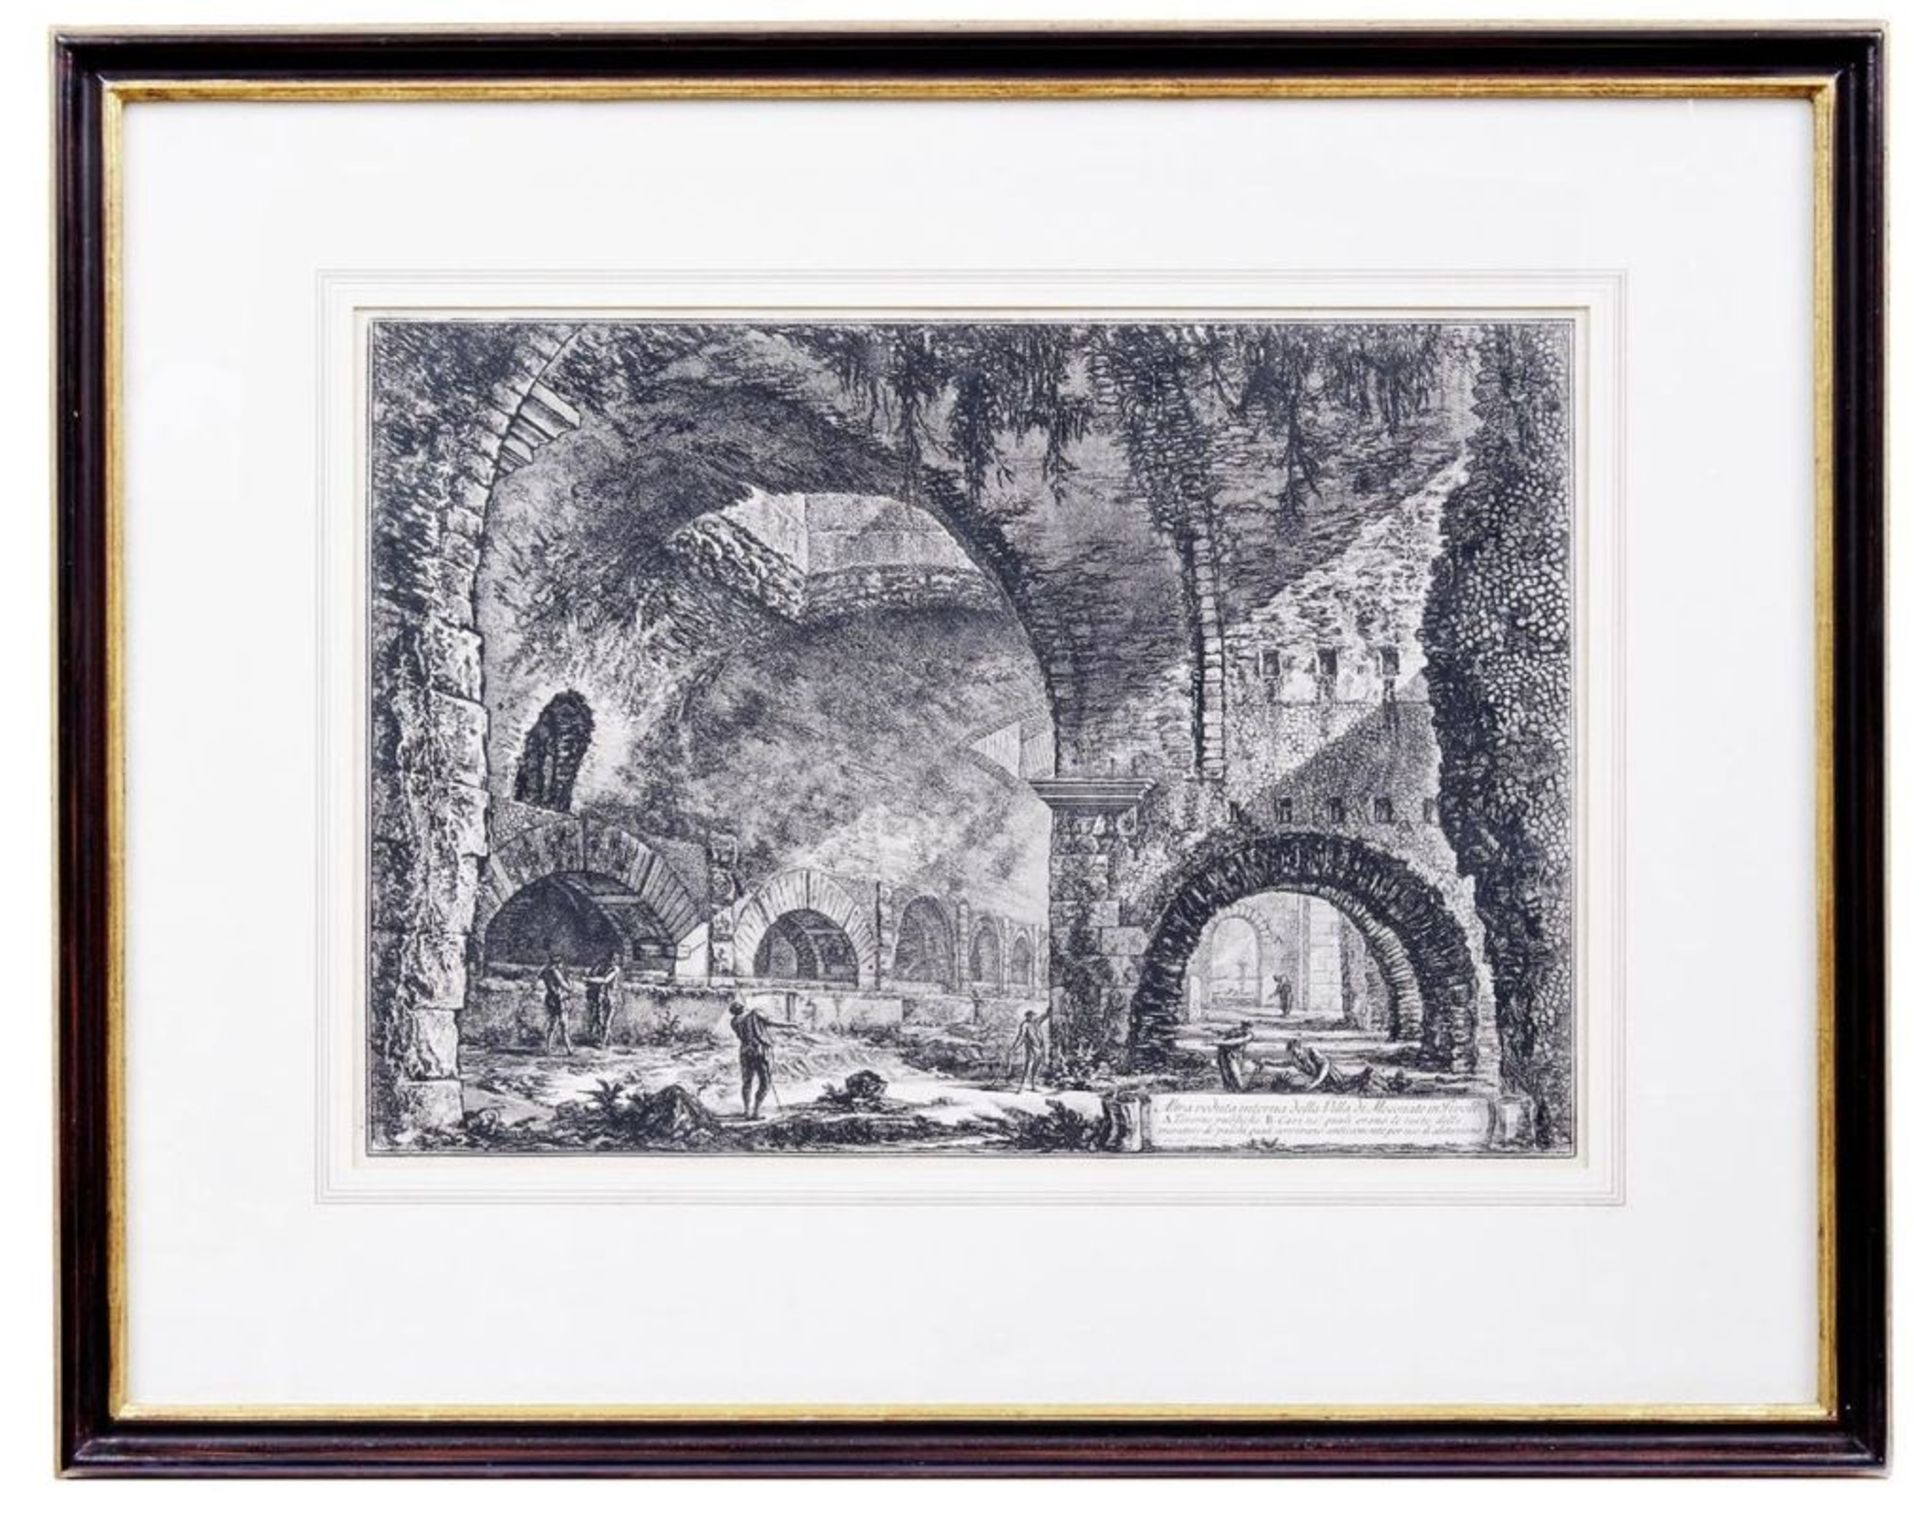 Piranesi, Giovanni-Battista, "Altra veduta interna della Villa di Mecenate in Tivoli"